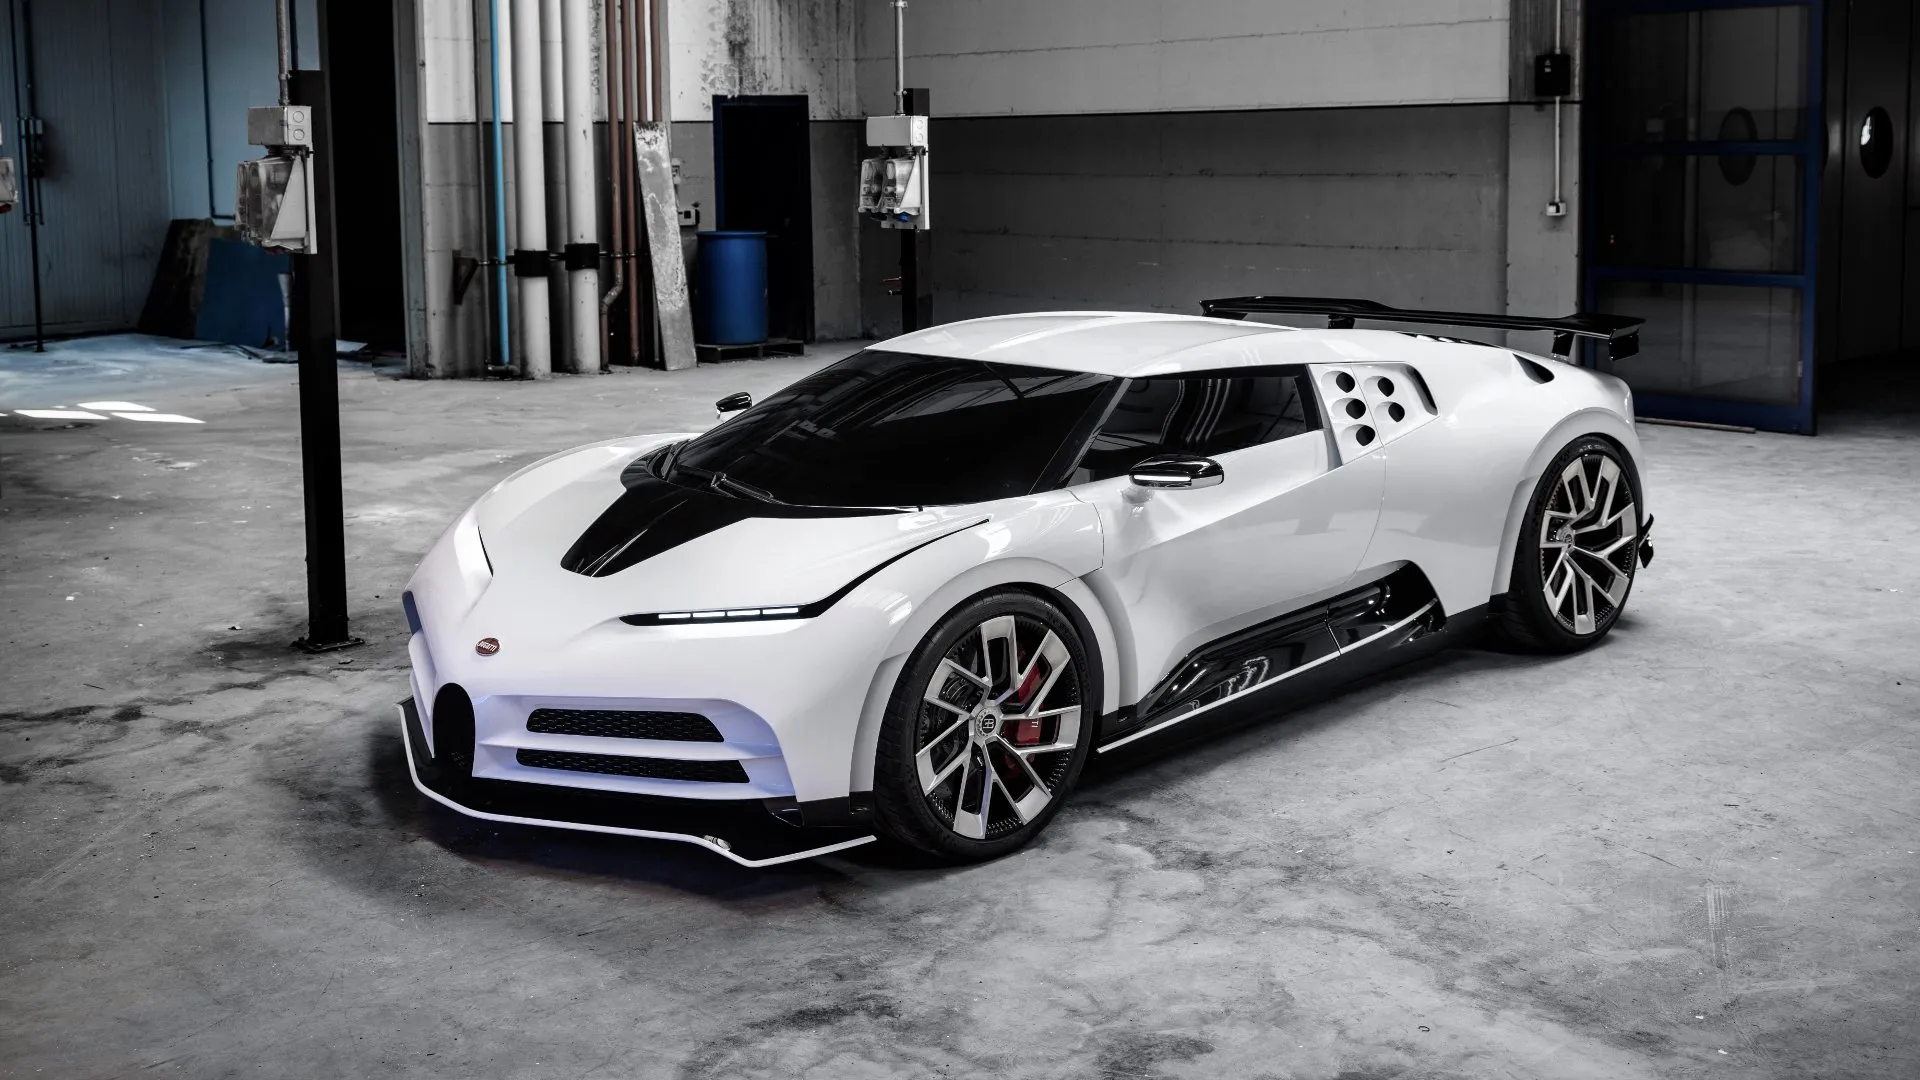 El 20% de los compradores del Bugatti Centodieci no les interesa el coche, sino el negocio que pueden hacer con él